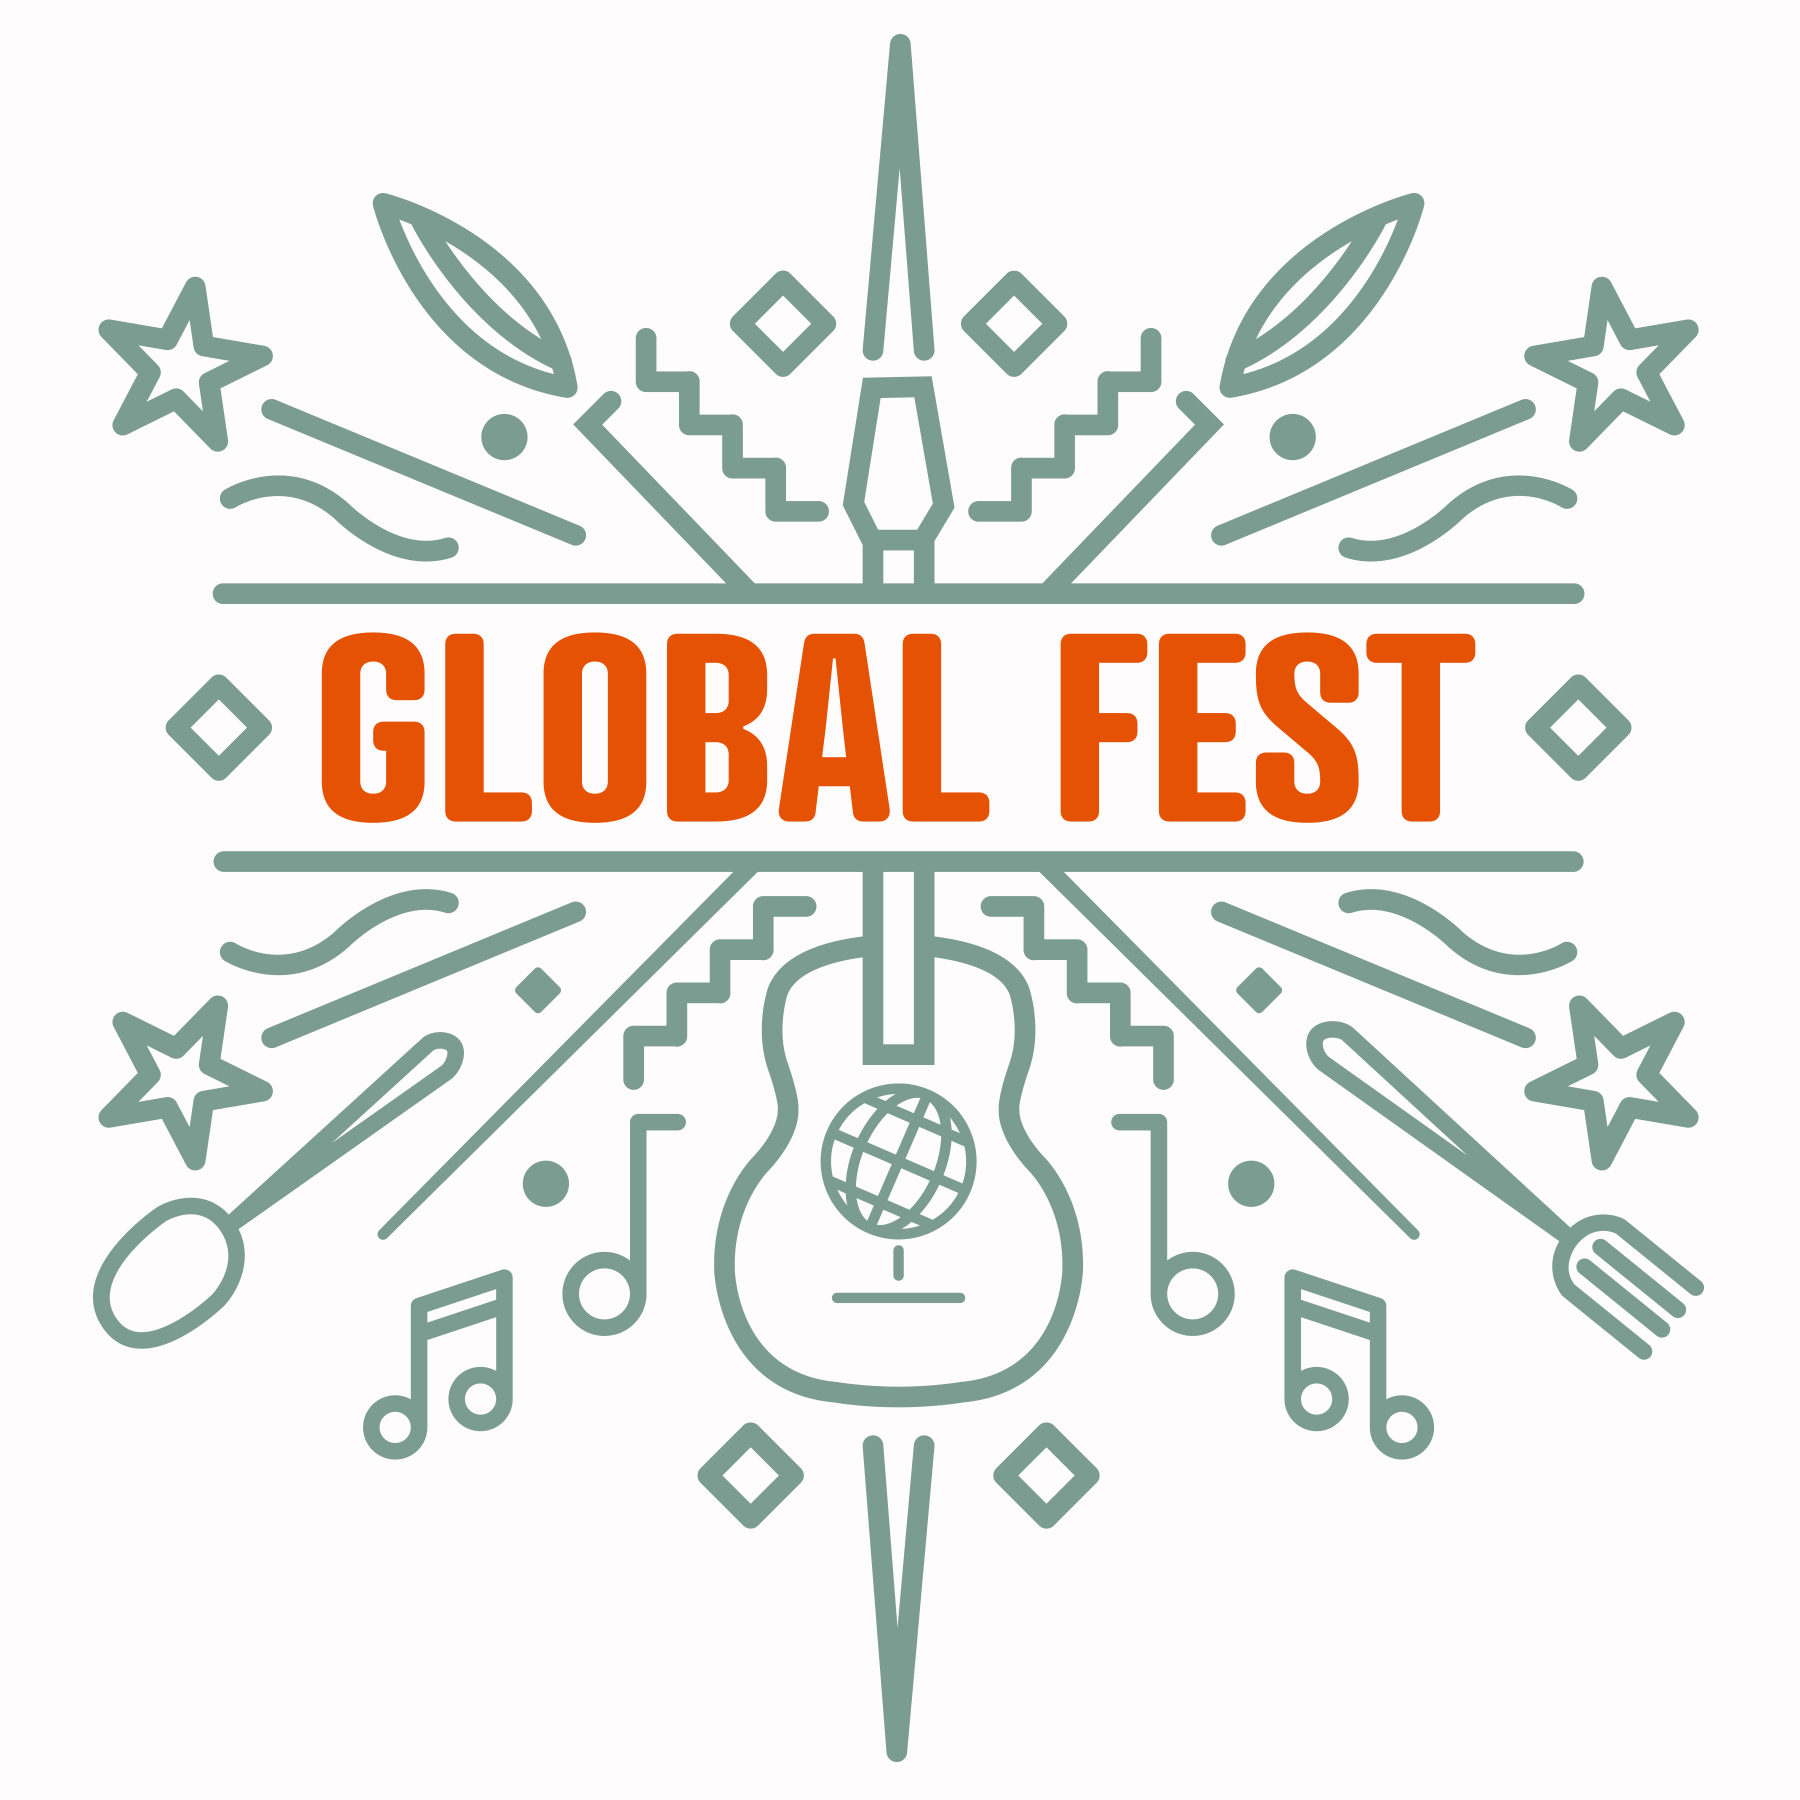 Global Fest IndyHub